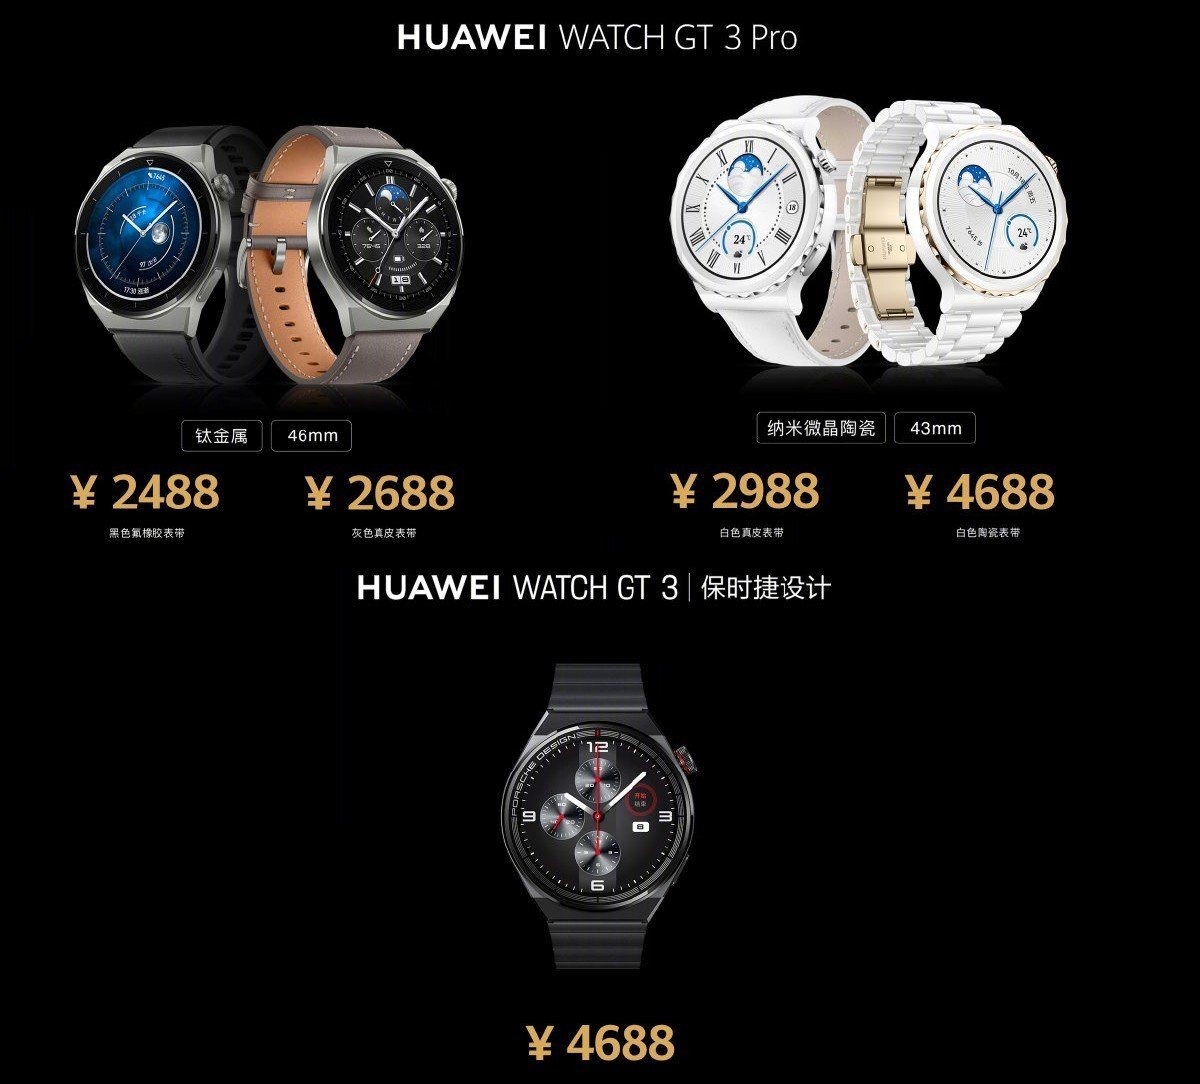 Watch gt 3 pro обзор. Huawei watch gt 3 Pro Titanium 46mm. Huawei watch gt 3 Pro Ceramic. Huawei watch gt3 Pro 46mm. Huawei watch gt 3 Pro 43mm.